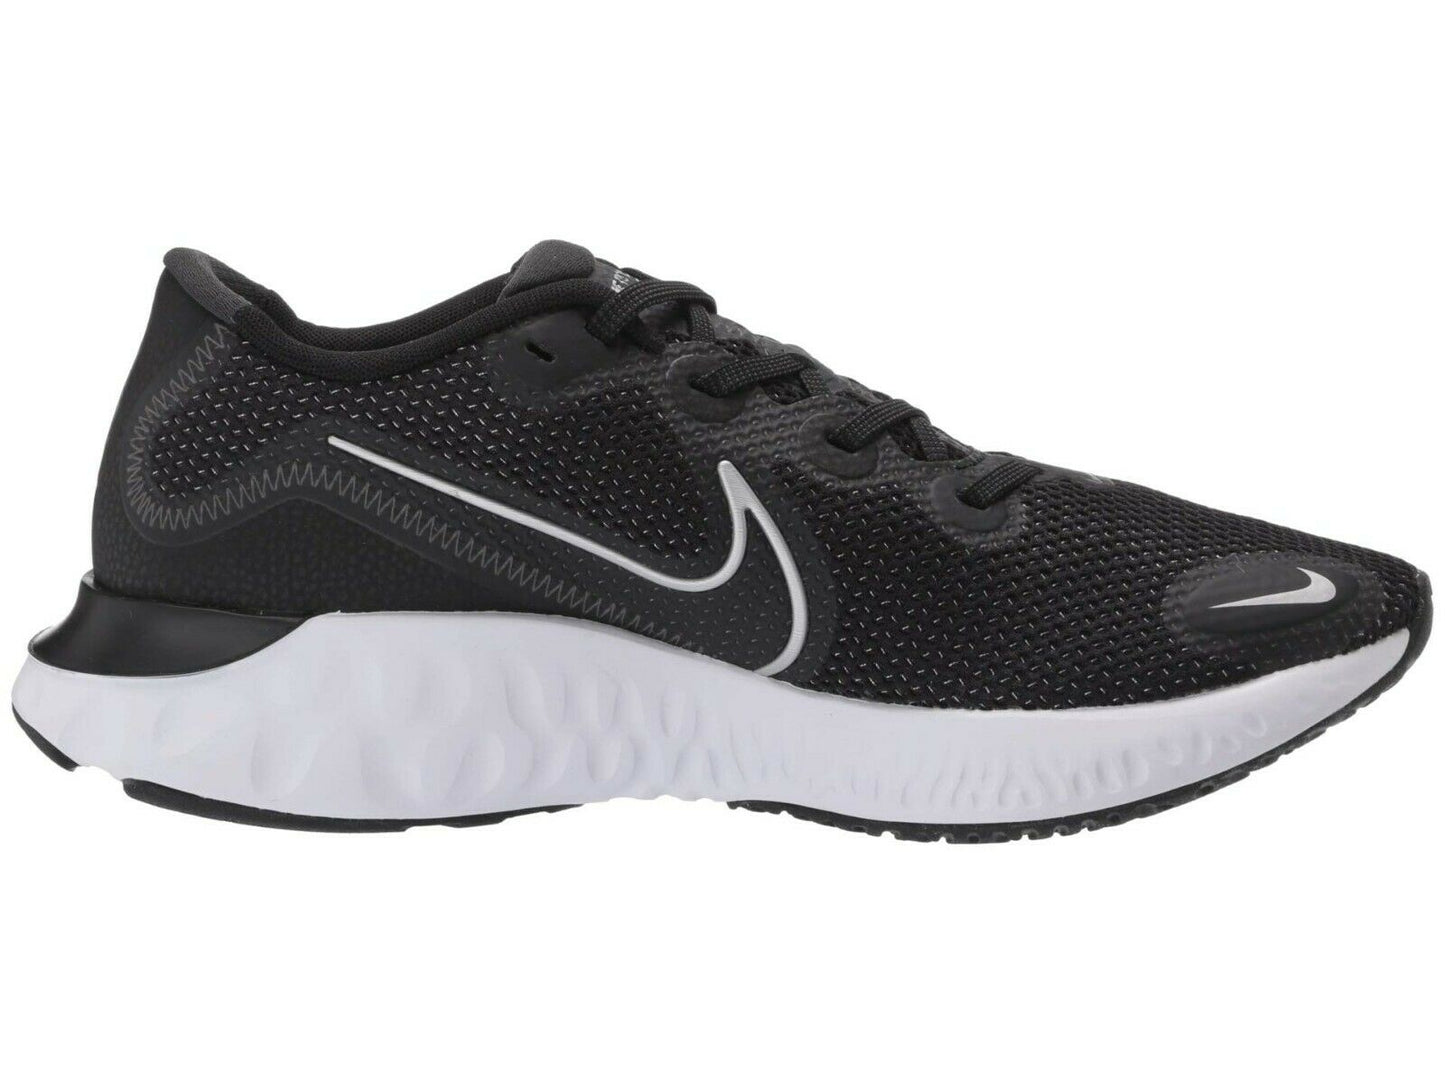 Men's Nike Renew Run Running Shoes, CK6357 002 Multiple Sizes Black/Metallic Silver/White